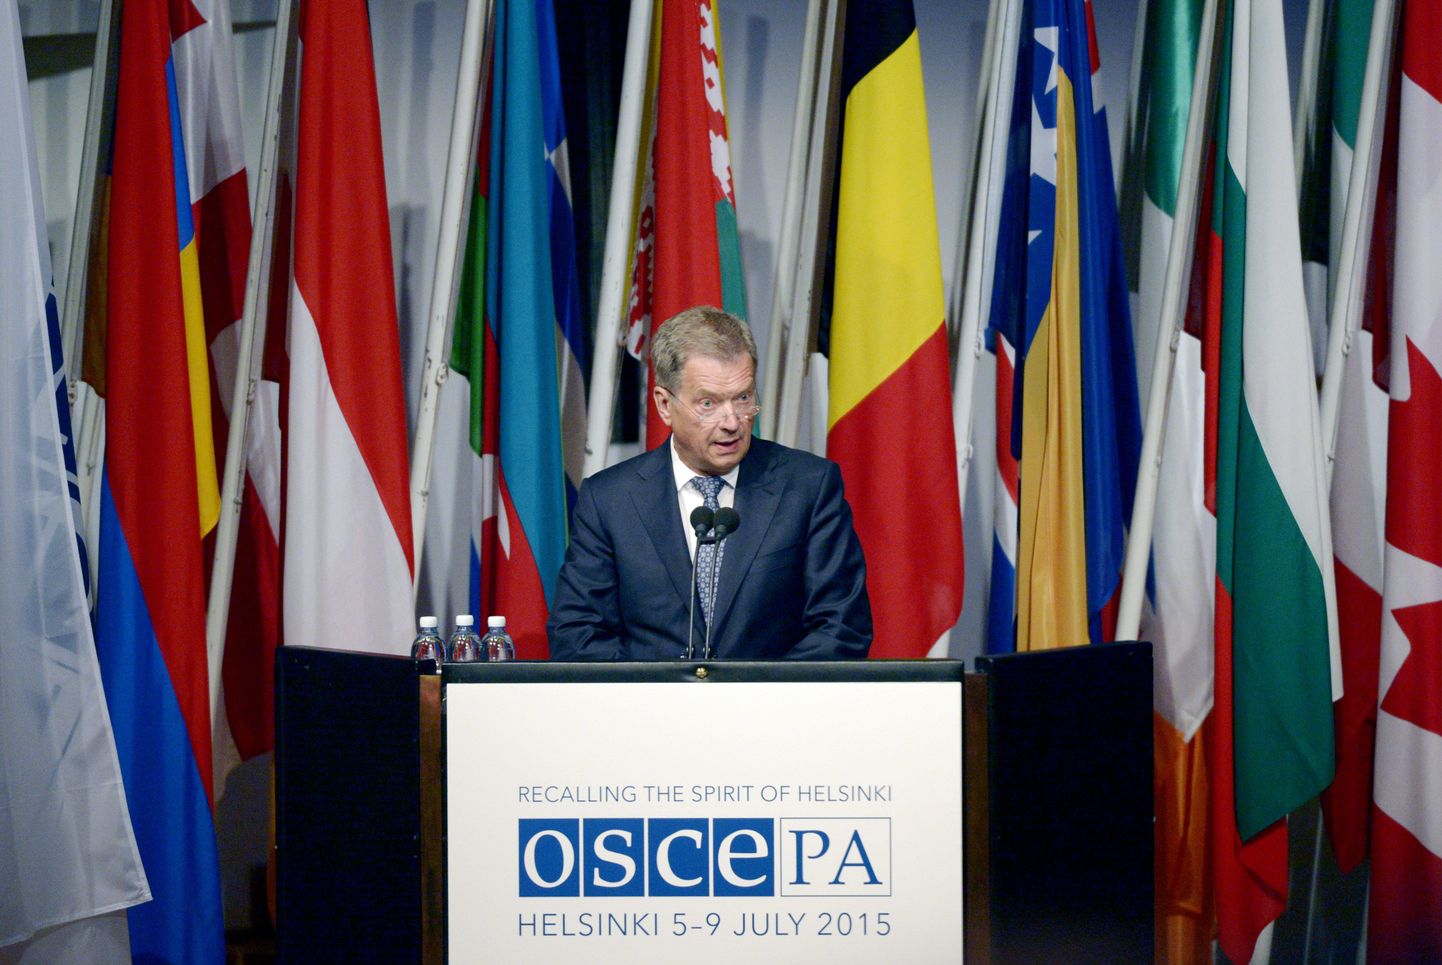 Soome president Sauli Niinistö OSCE PA istungit avamas.